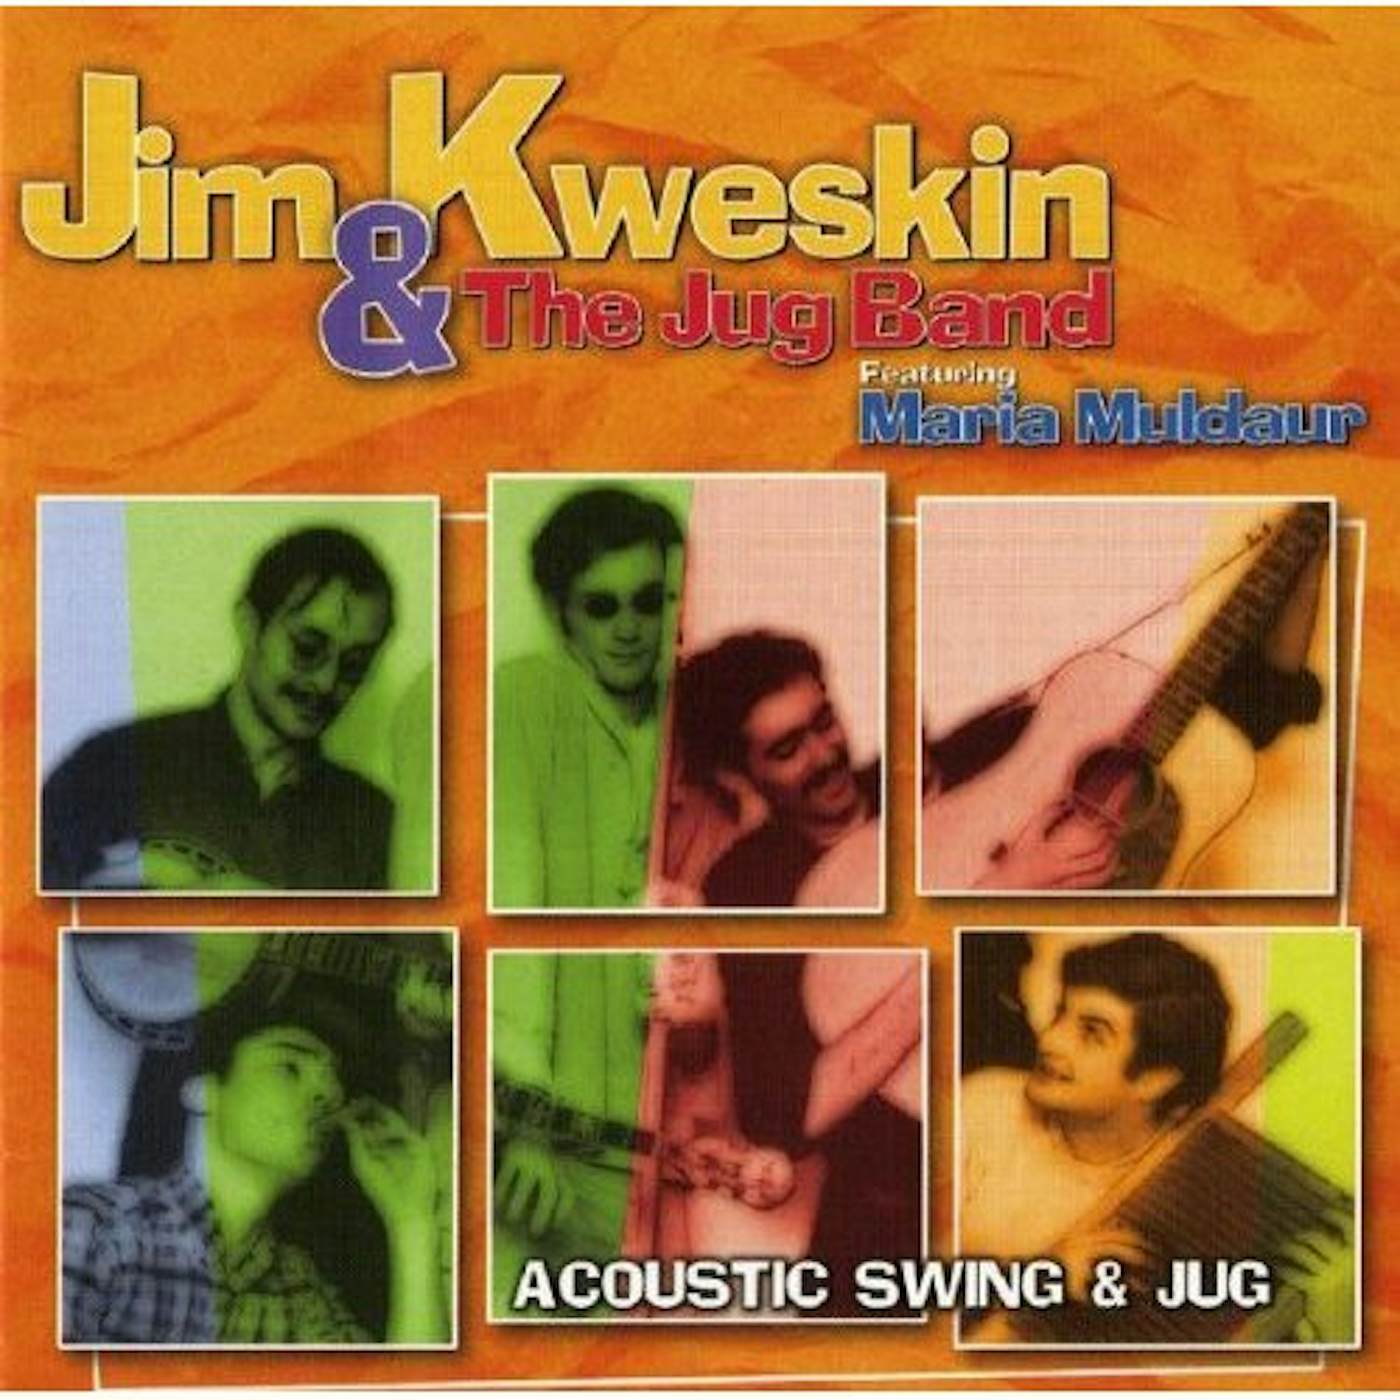 Jim Kweskin ACOUSTIC SWING & JUG CD